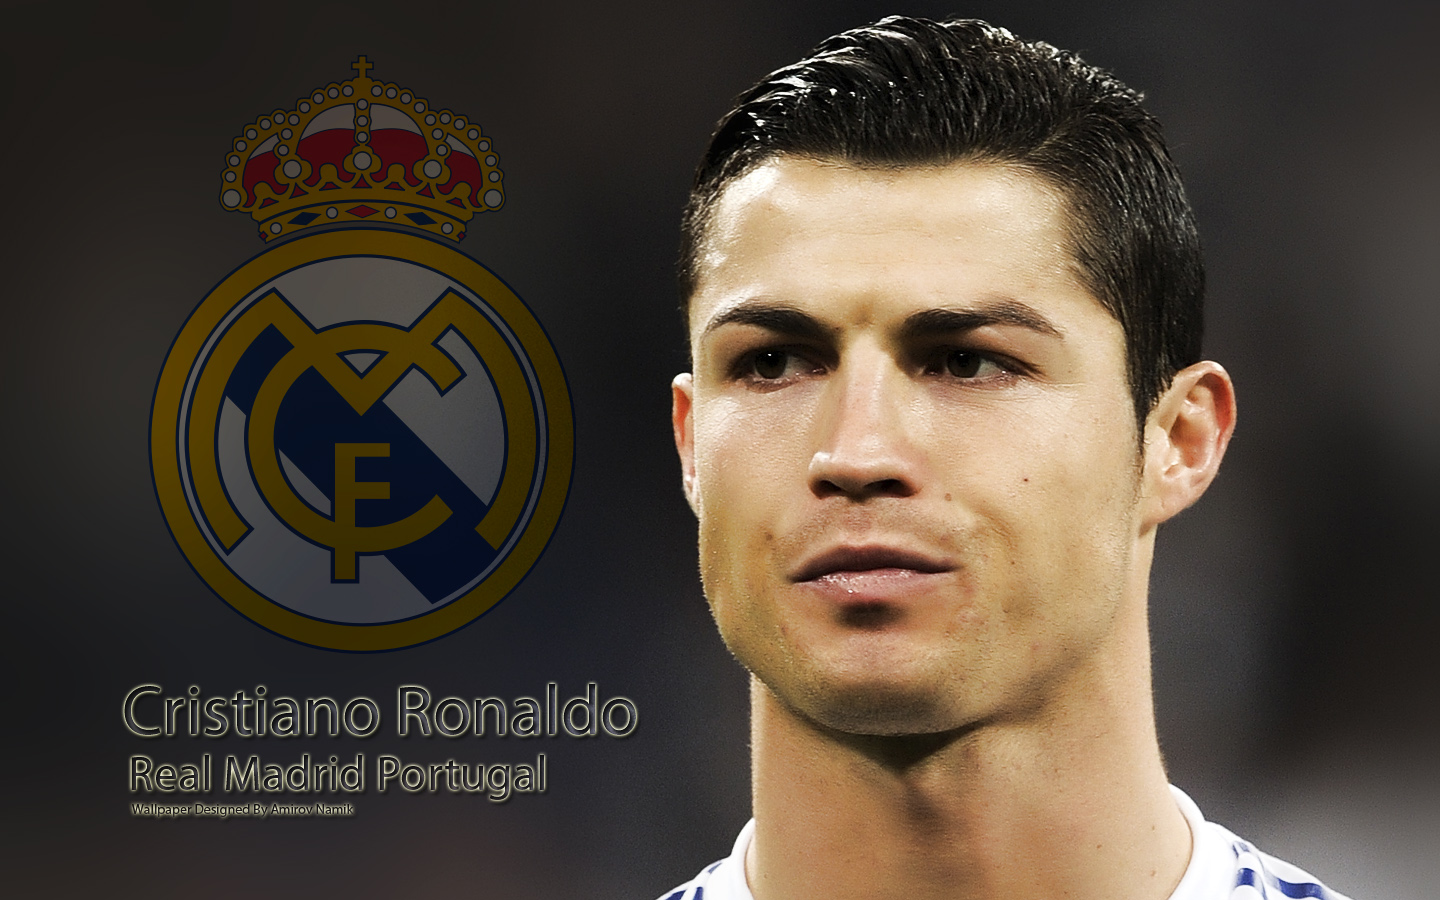 Download Wallpaper Cristiano Ronaldo Dikirim Oleh Namik9 Bolanet